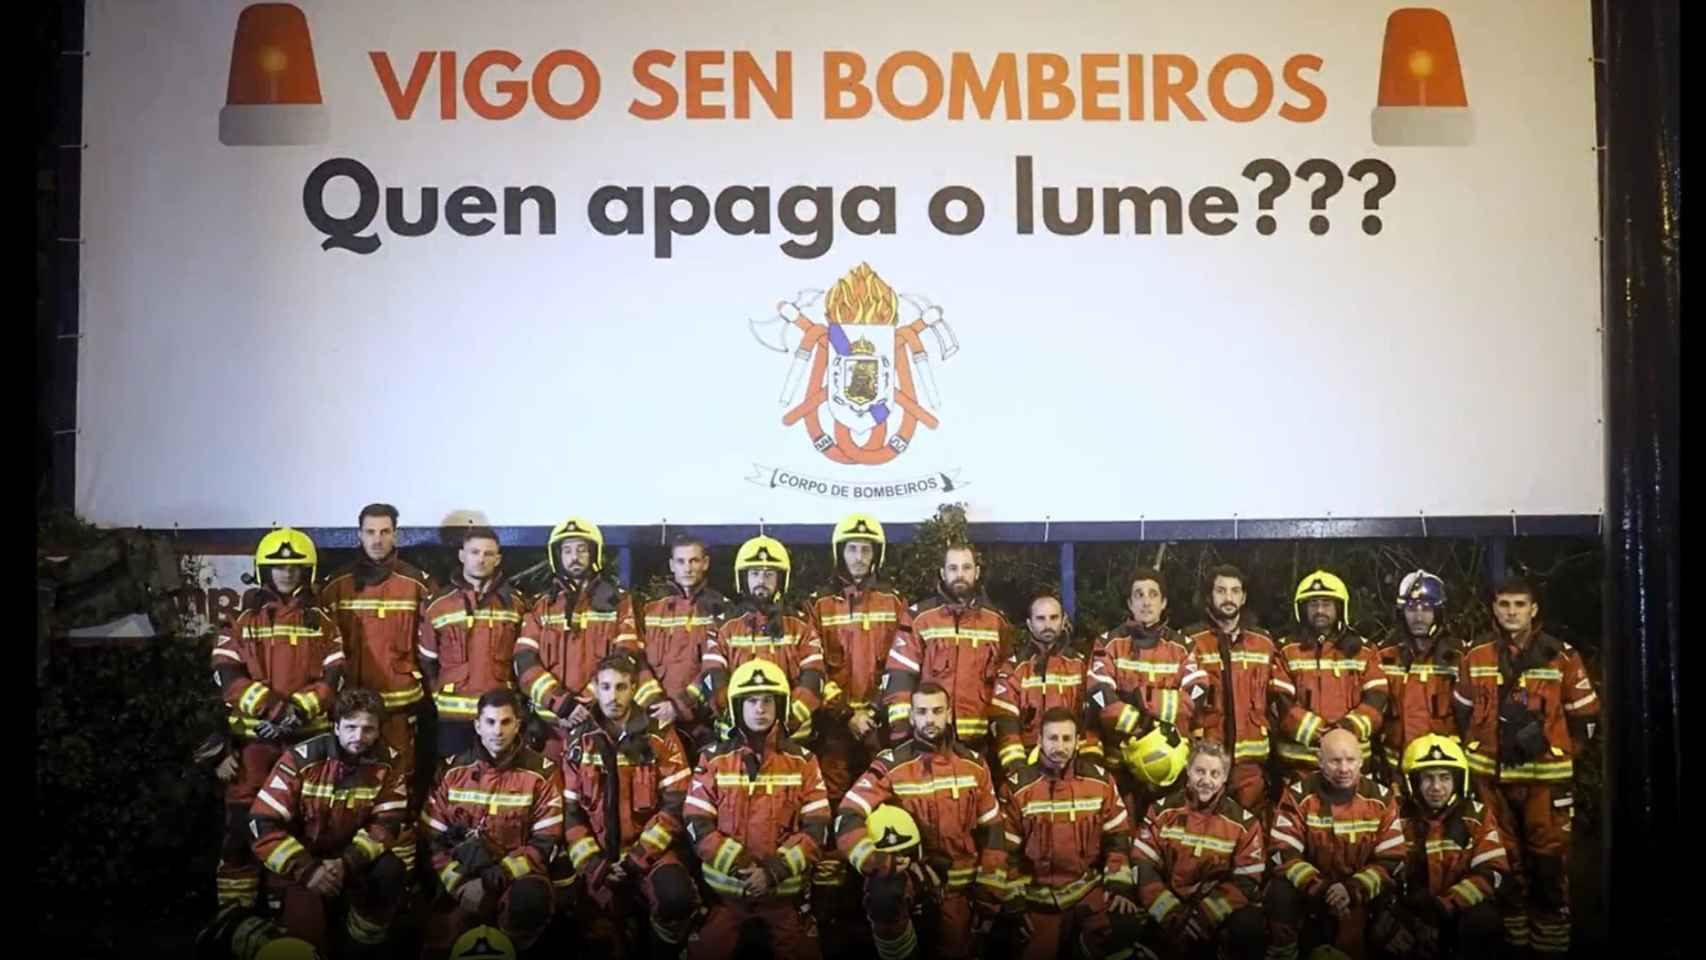 El cuerpo de Bomberos de Vigo posan ante la valla publicitaria.